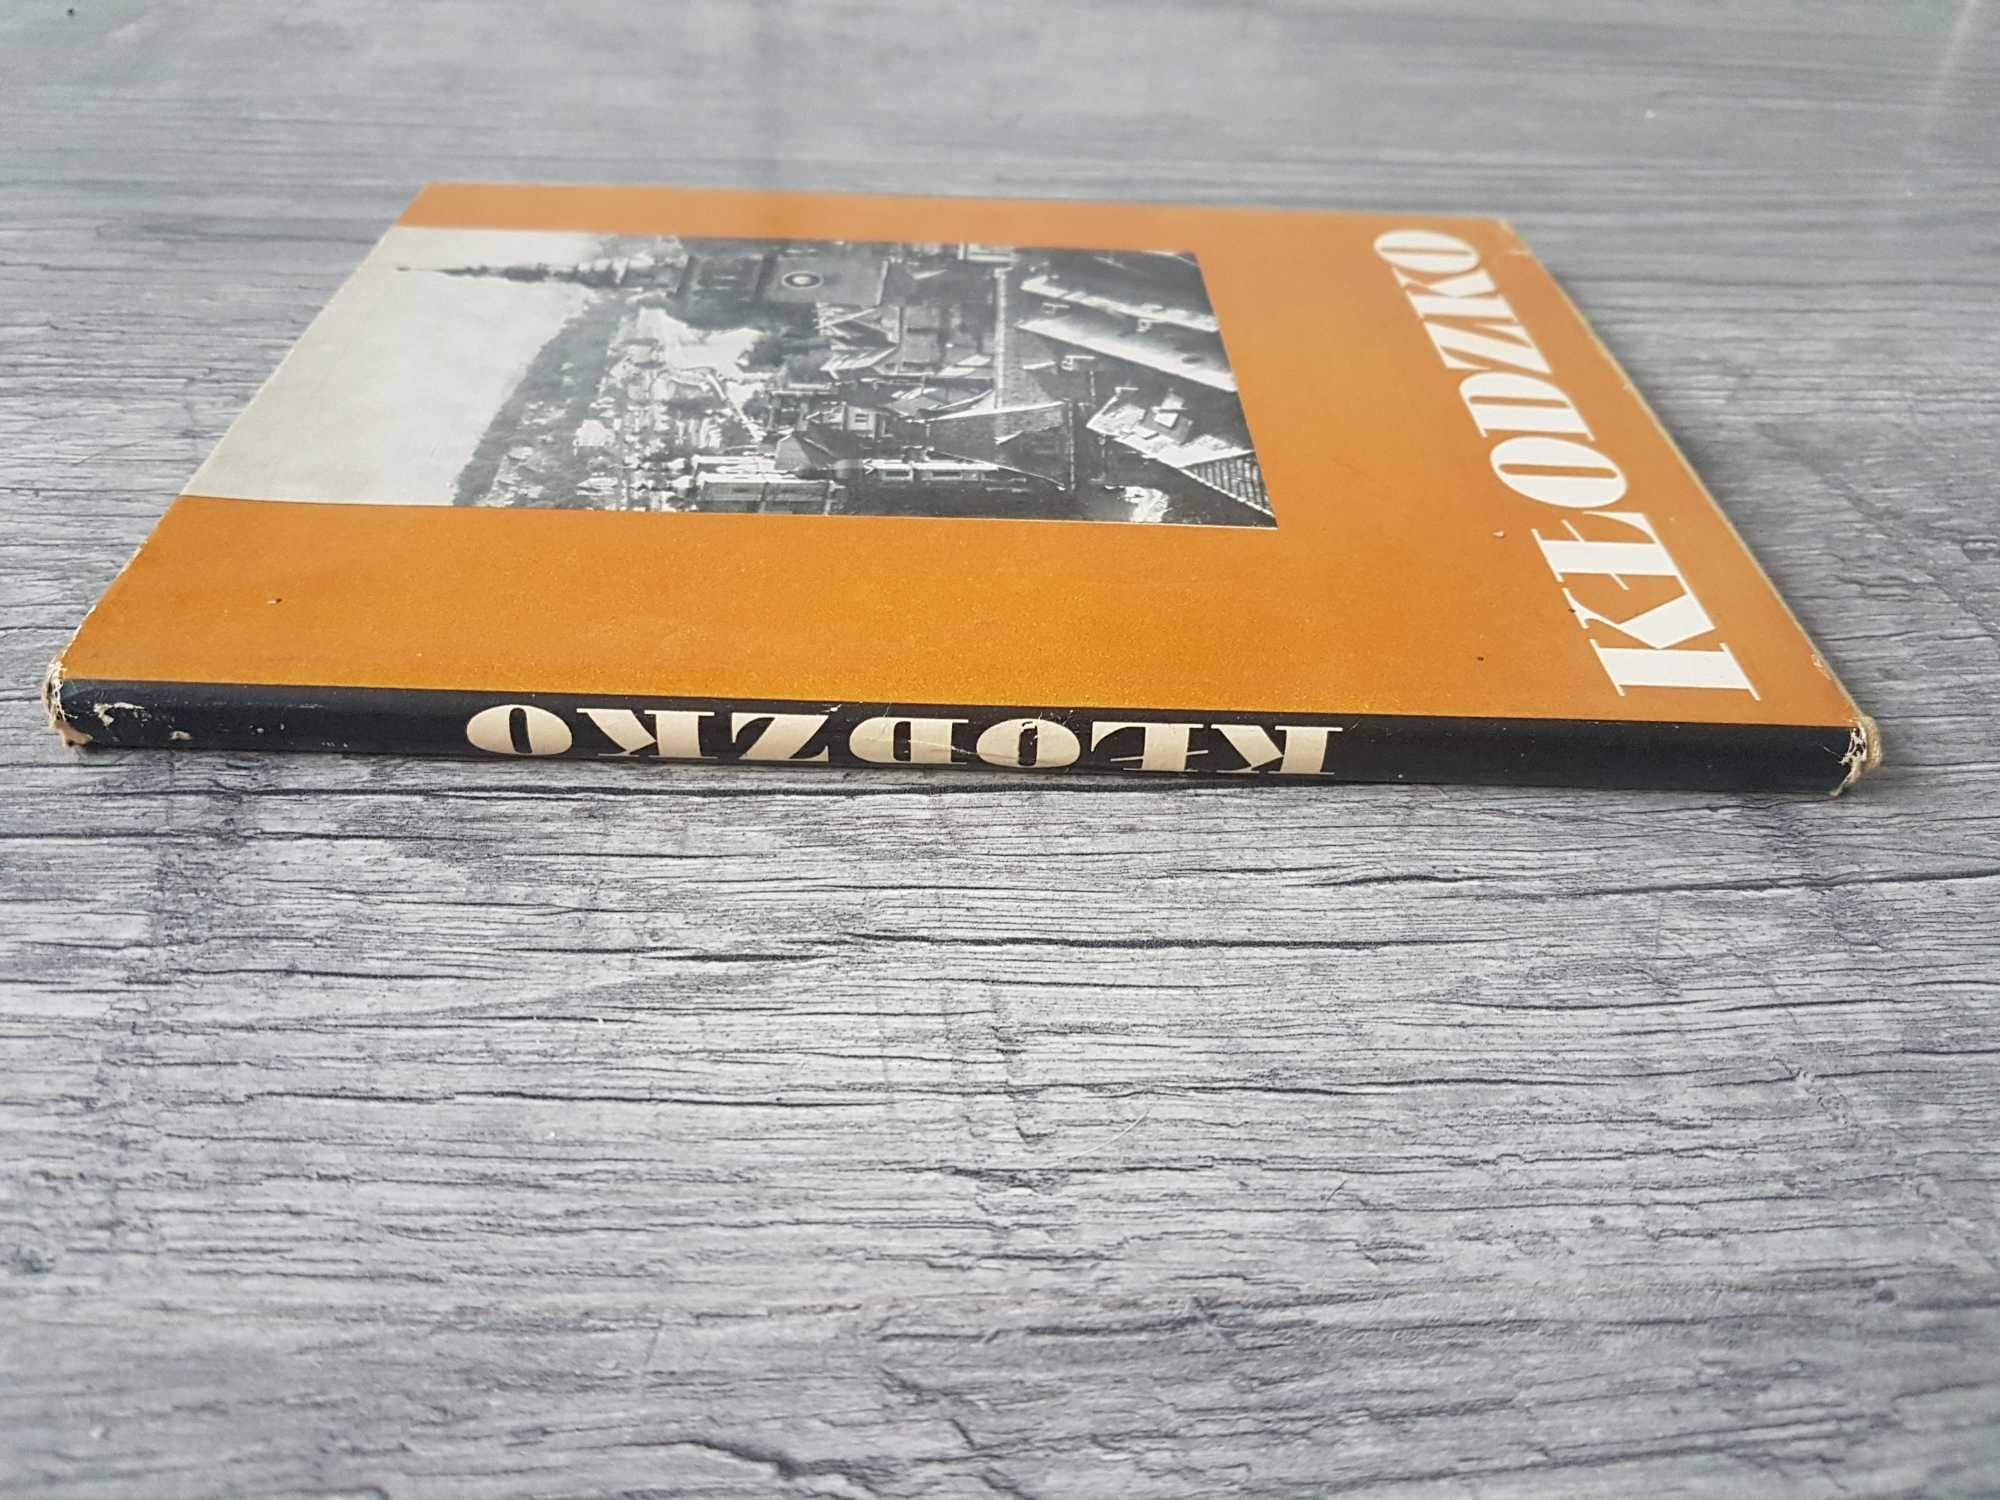 Album Kłodzko Władysław Strojny 1967r. język ang niem franc rosyjs pol